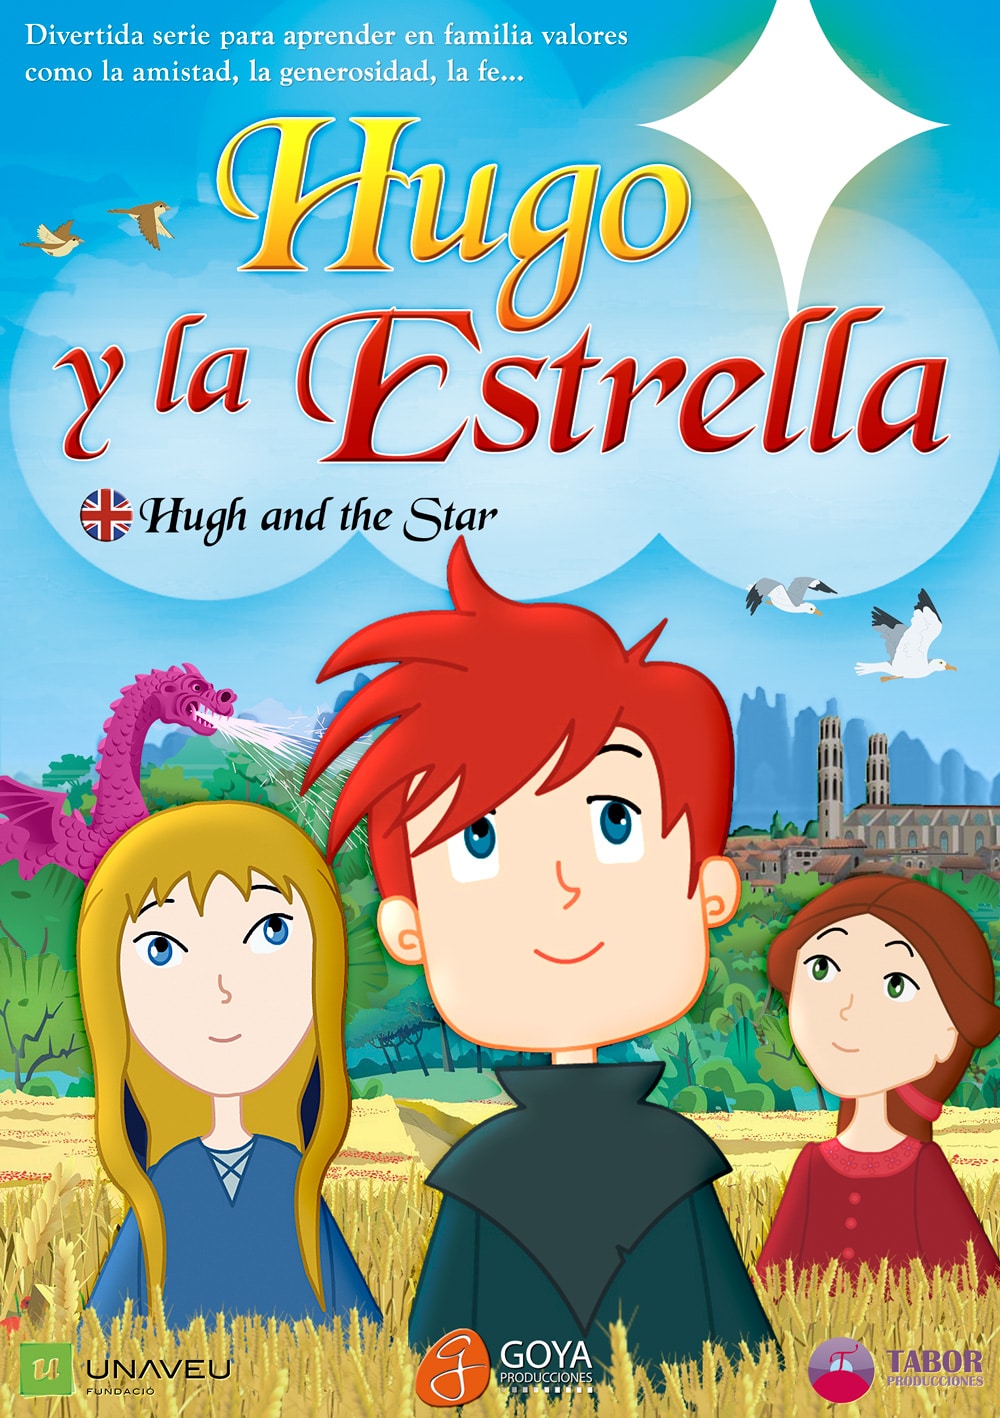 Hugo y la Estrella